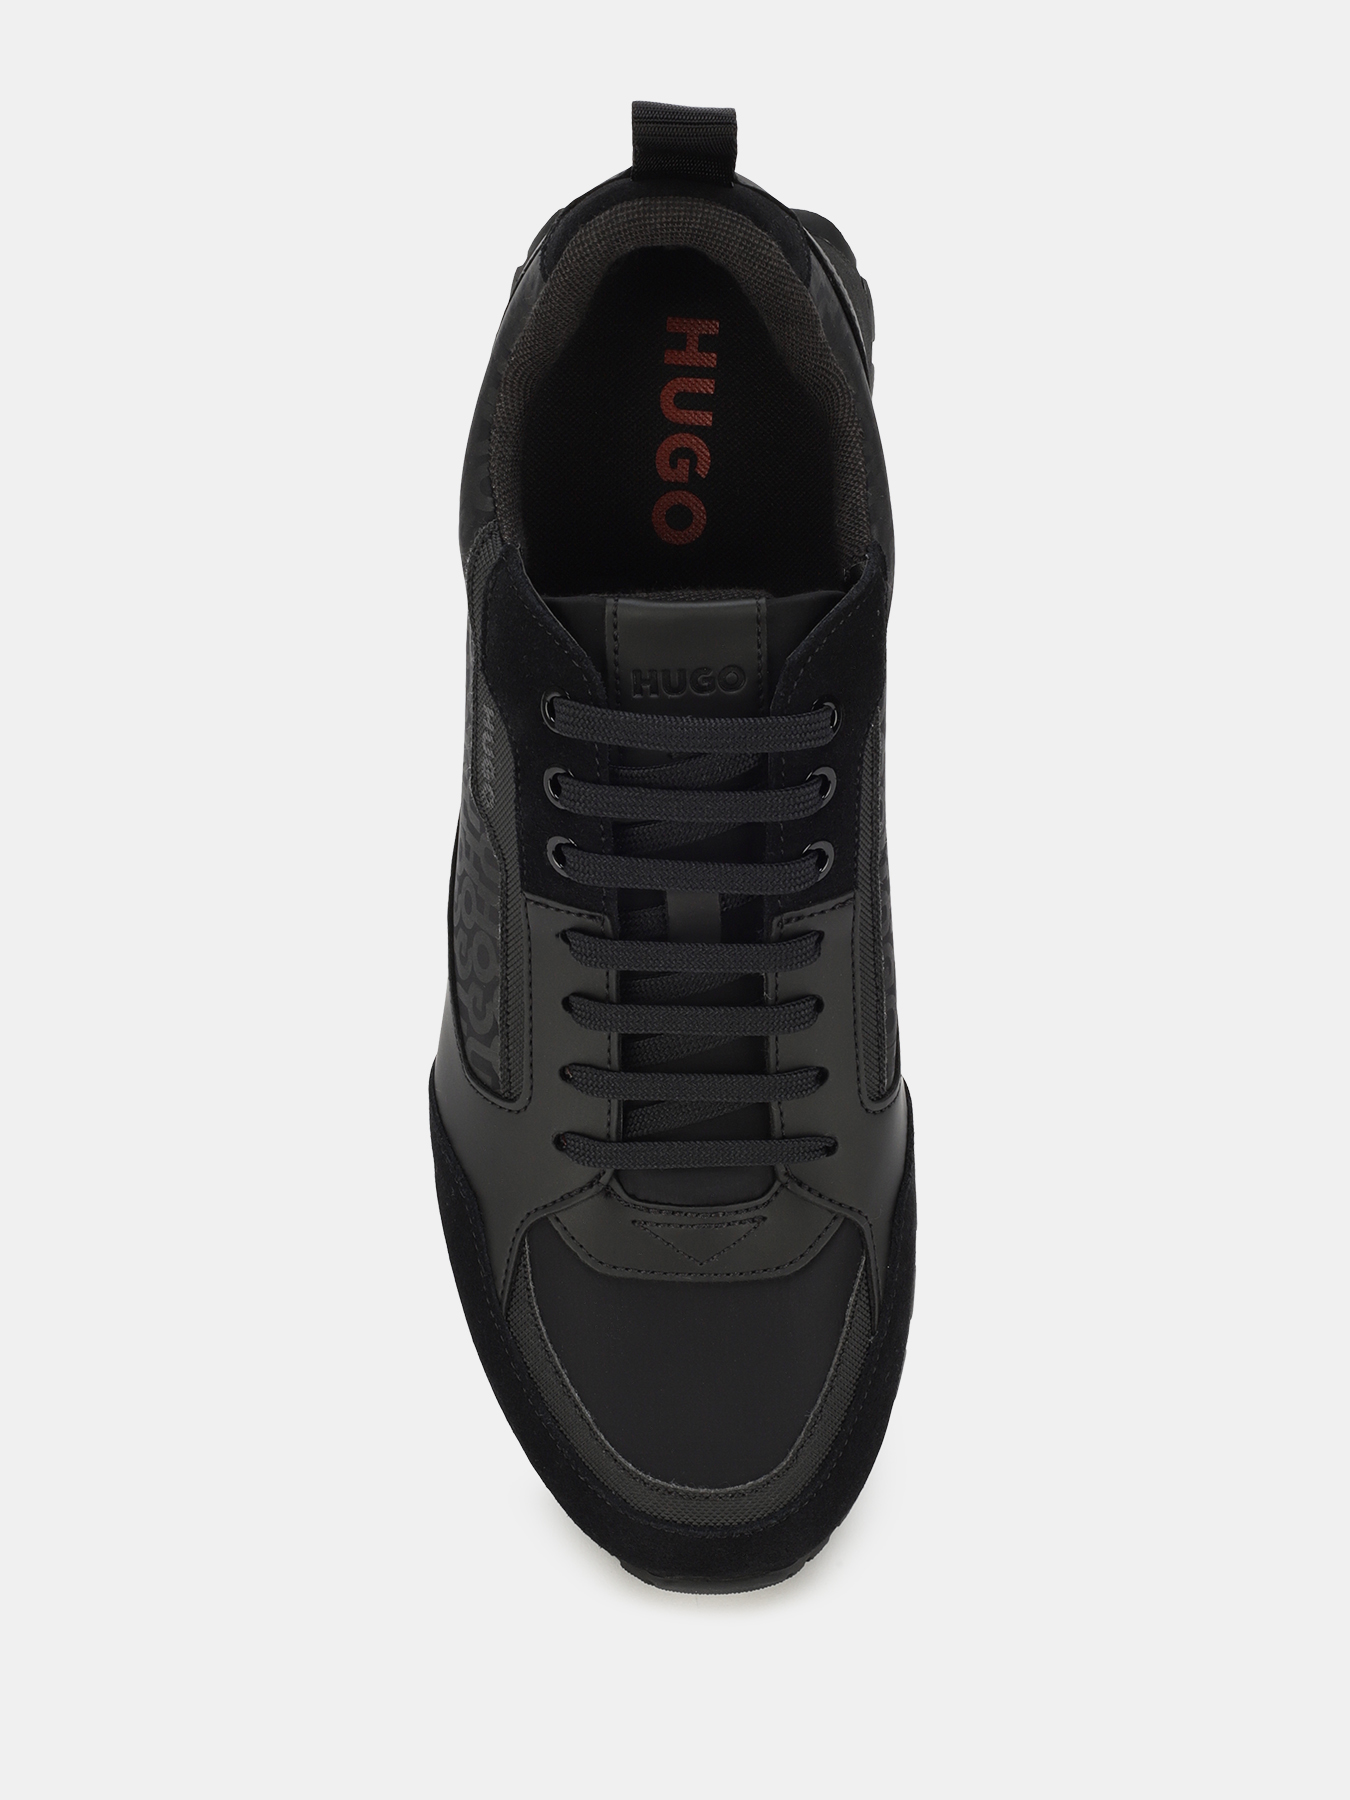 Кроссовки Icelin HUGO 420453-023, цвет черный, размер 44 - фото 2